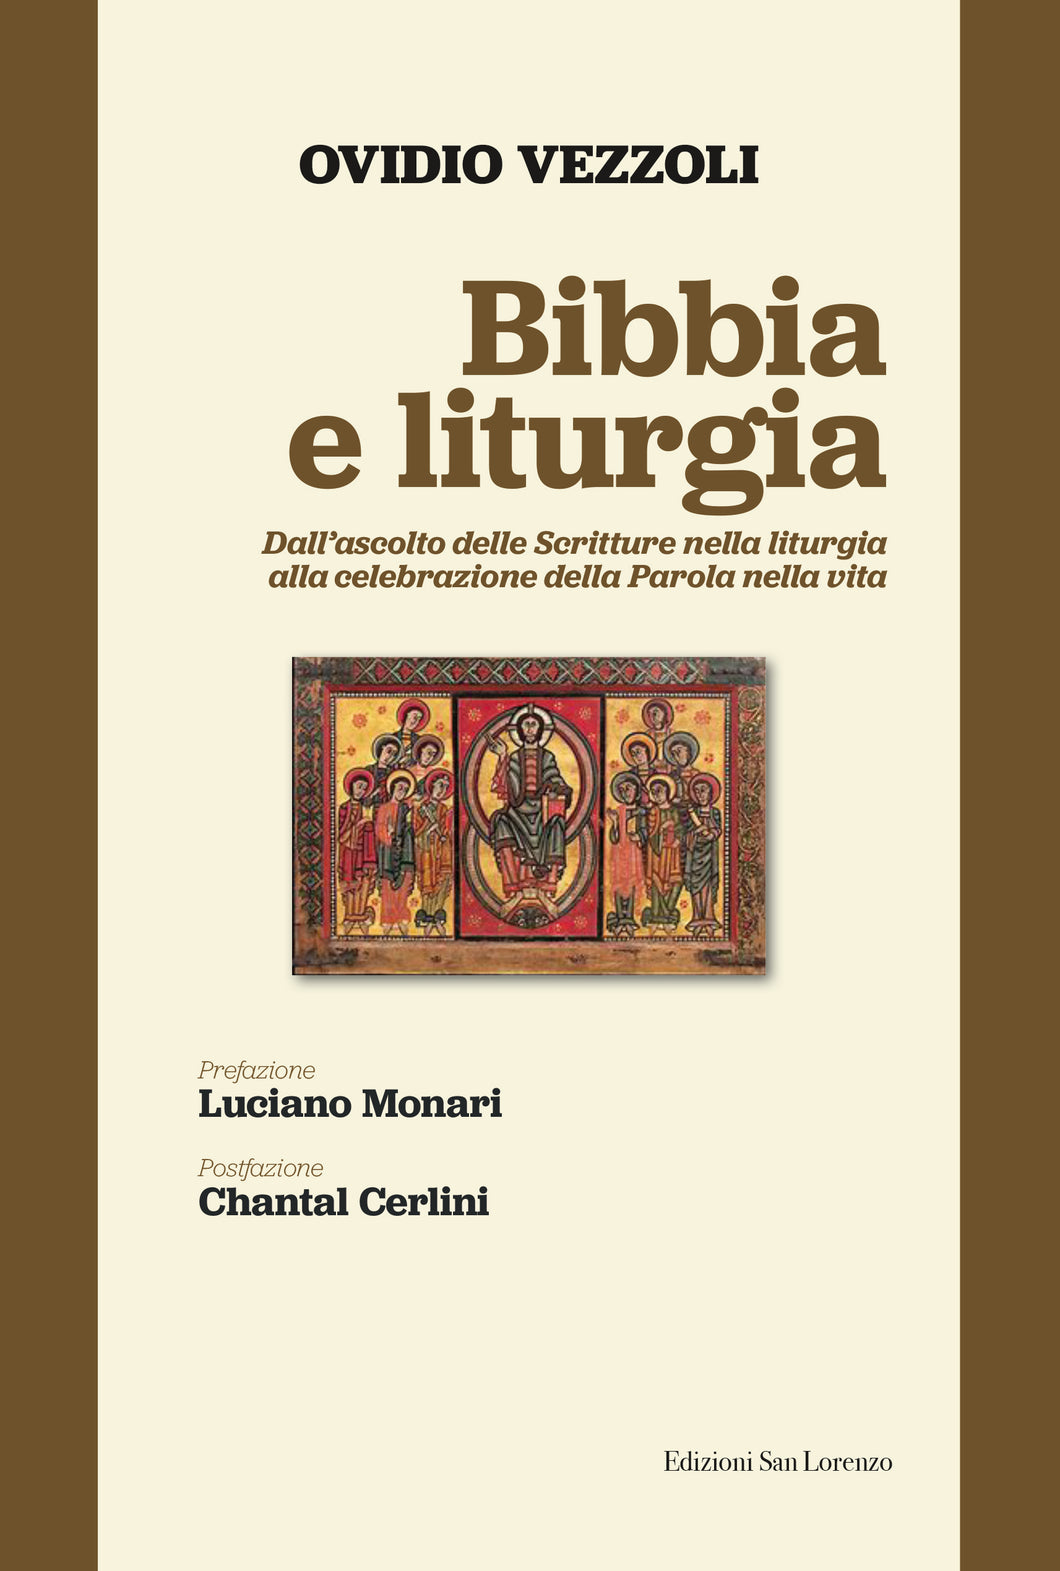 Bibbia e liturgia - di mons. Ovidio Vezzoli - Edizioni San Lorenzo